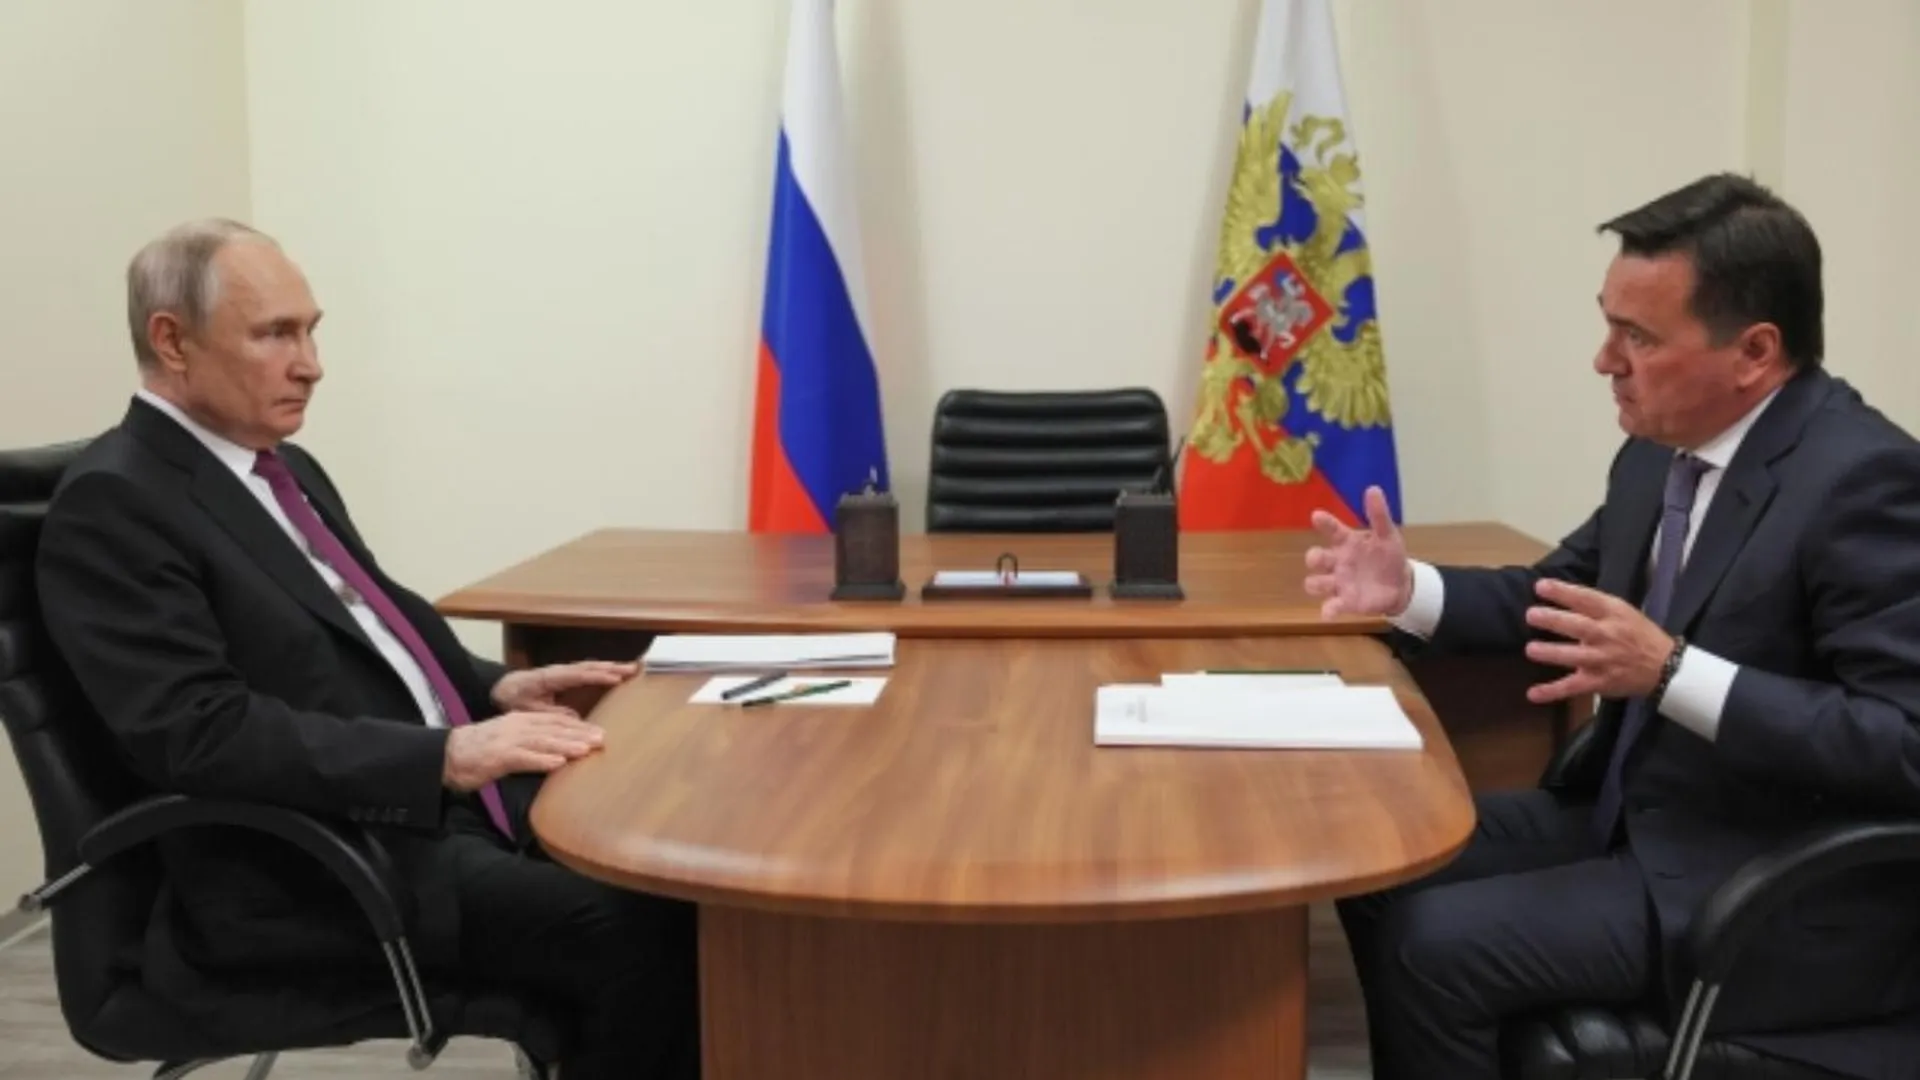 Владимир Путин поддержал Андрея Воробьева, который планирует переизбираться на пост губернатора